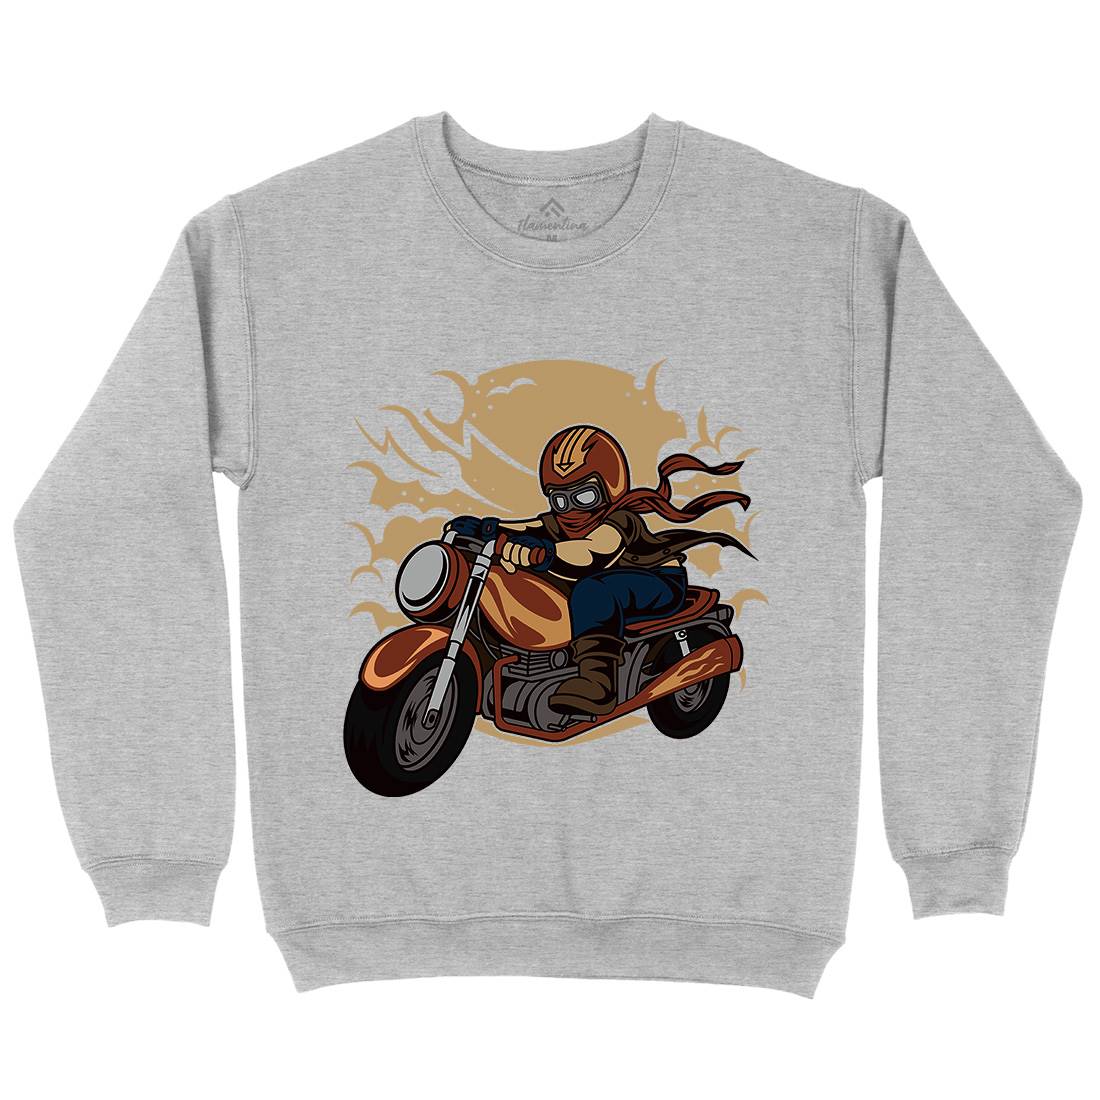 Wild Biker Kids Crew Neck Sweatshirt Motorcycles C473